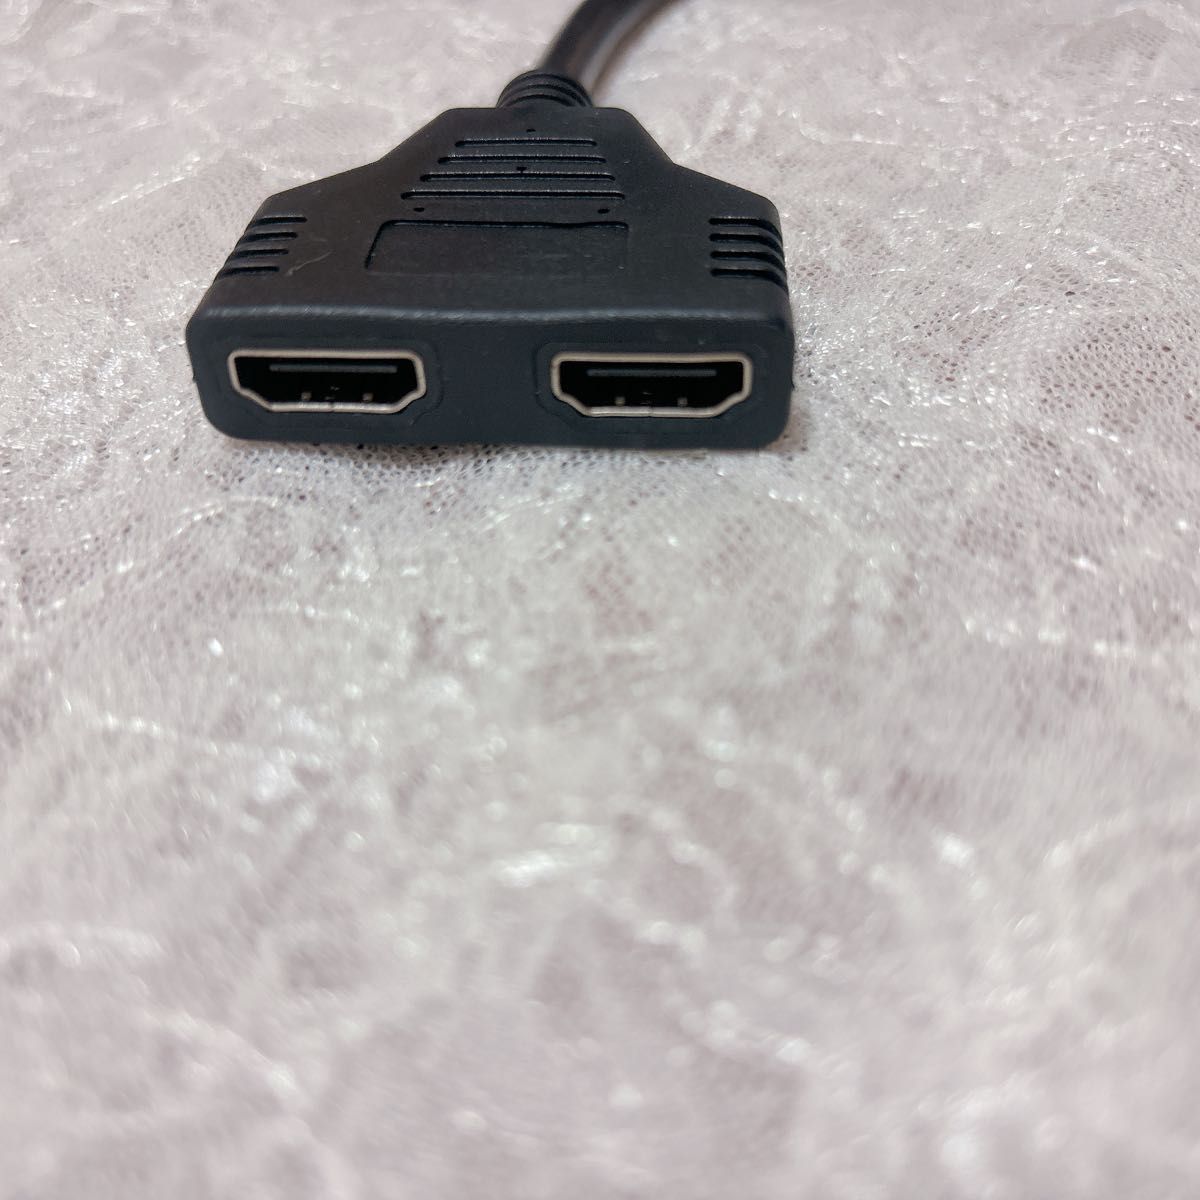 HDMIケーブル 1080P オス デュアルHDMI メス 変換器 HDMI 変換アダプタ コネクタ